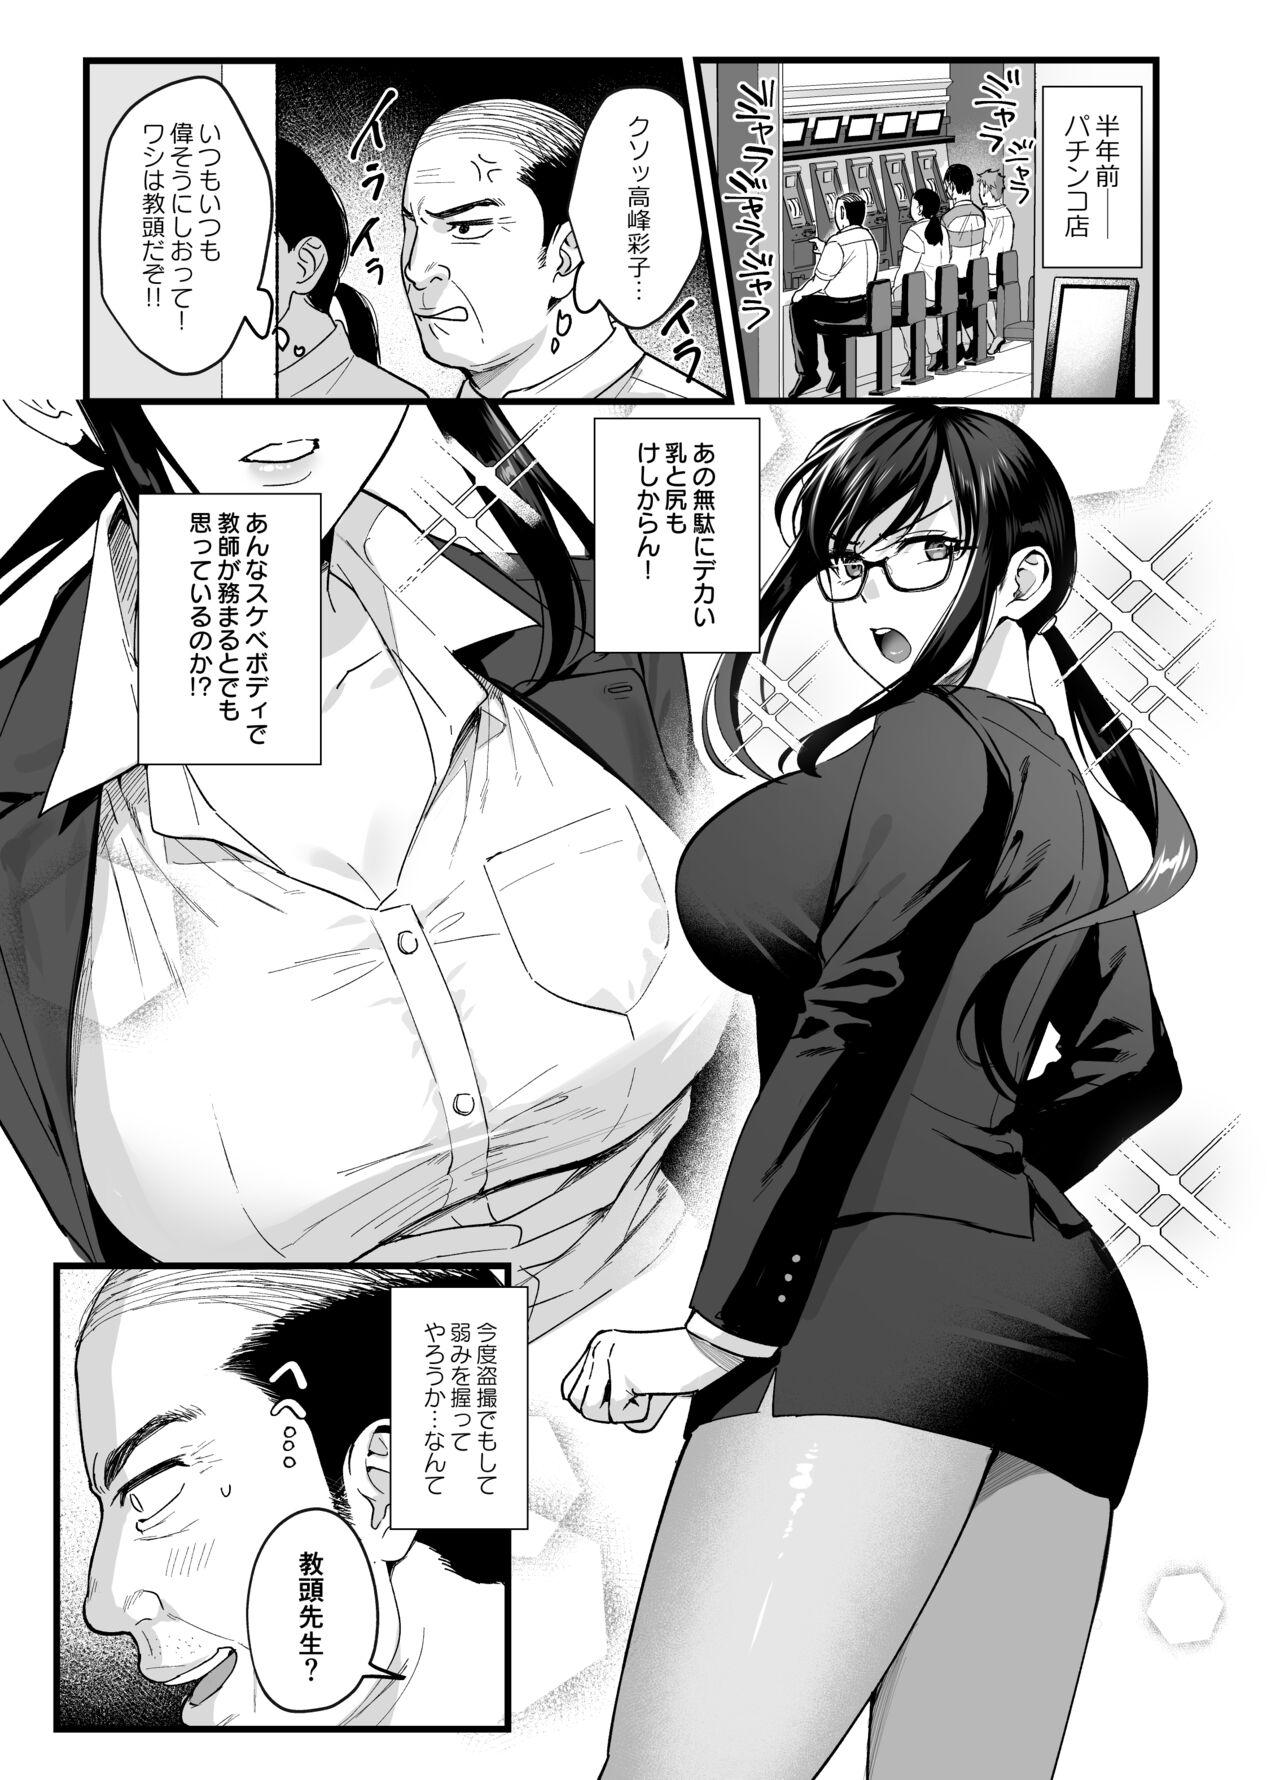 Monstercock Toshoshitsu no Kanojo 6 - Original Shavedpussy - Page 2